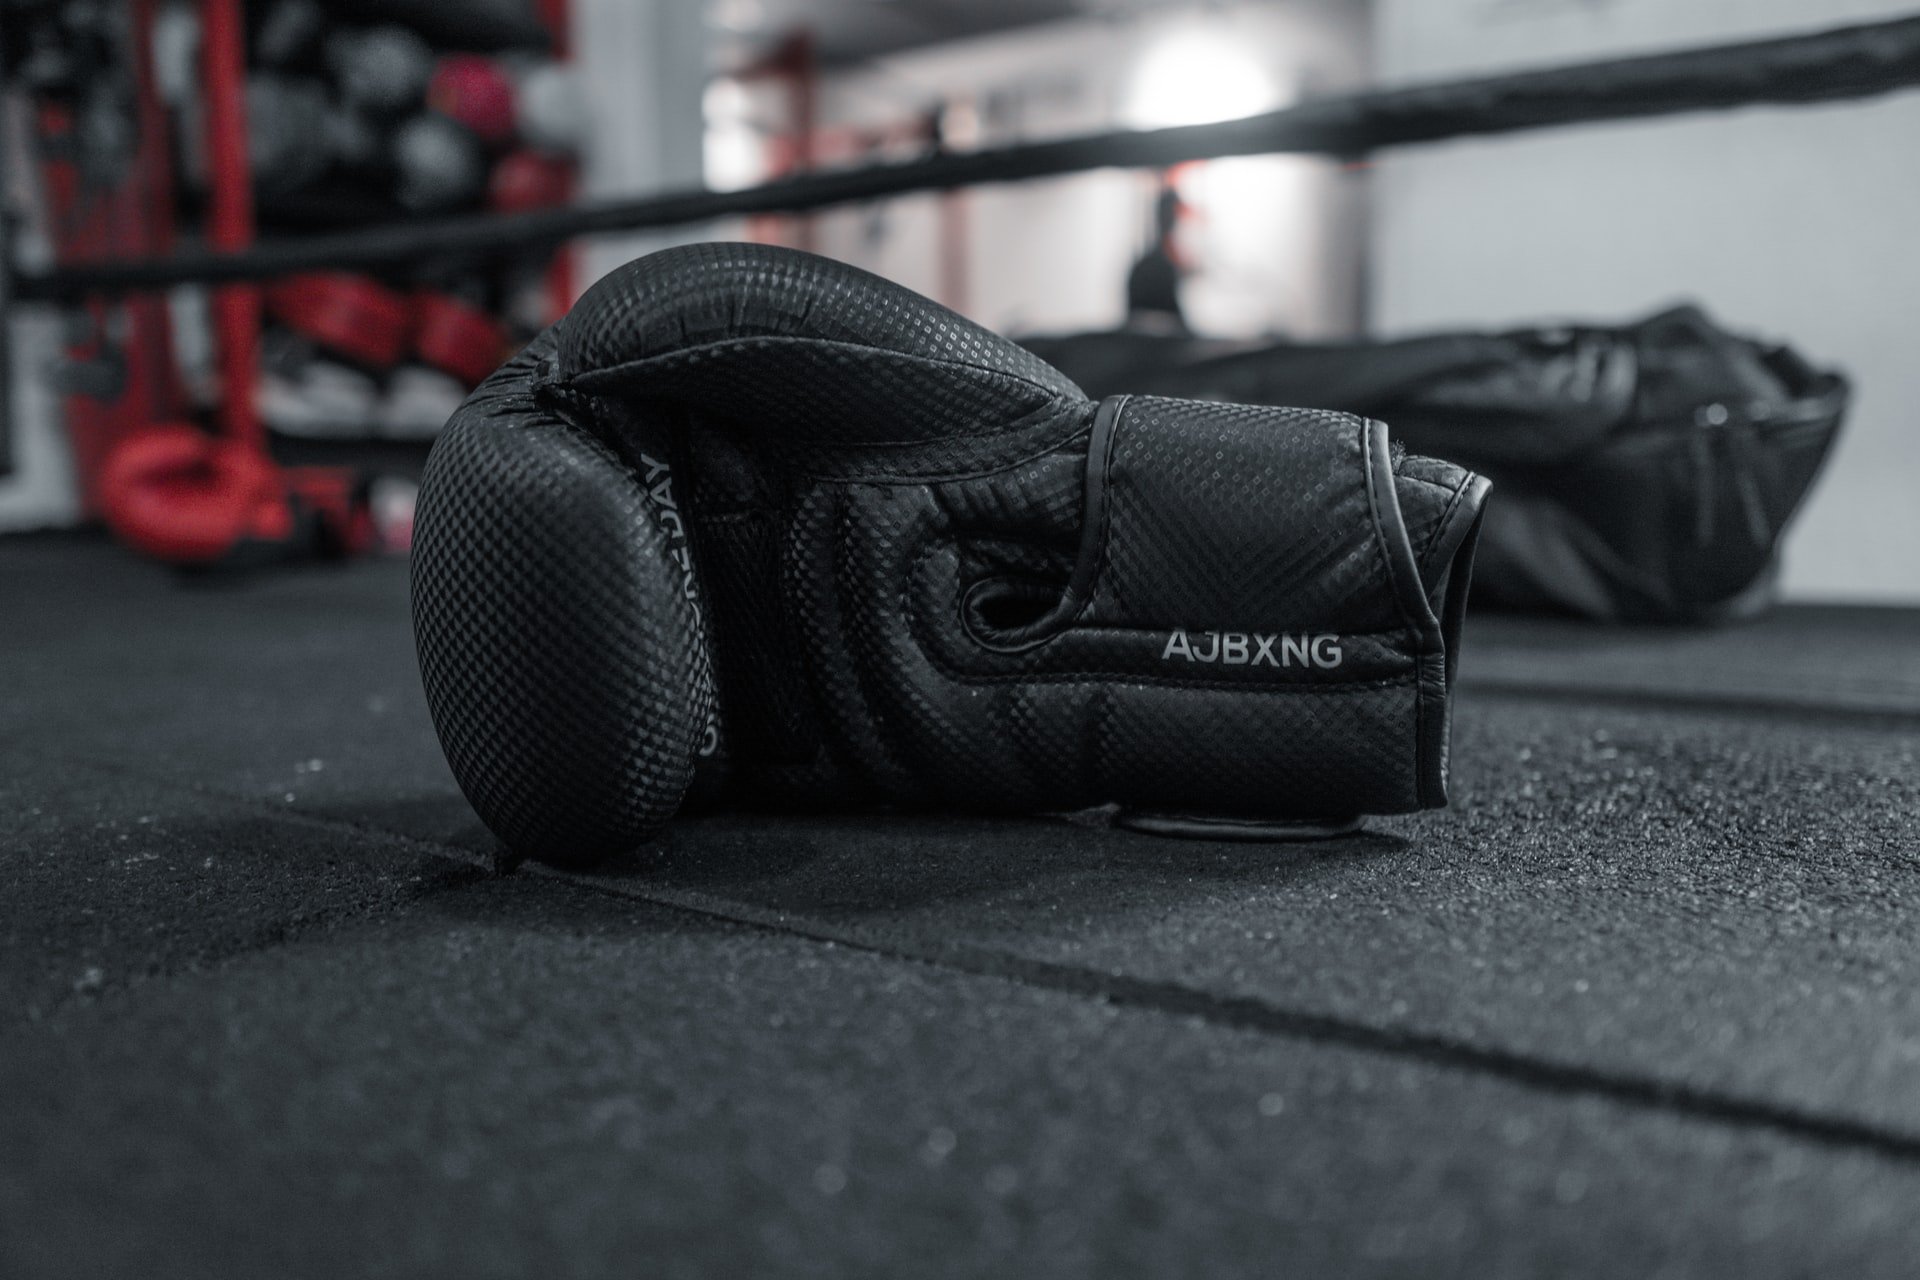 Boxing gloves. | Source: Unsplash